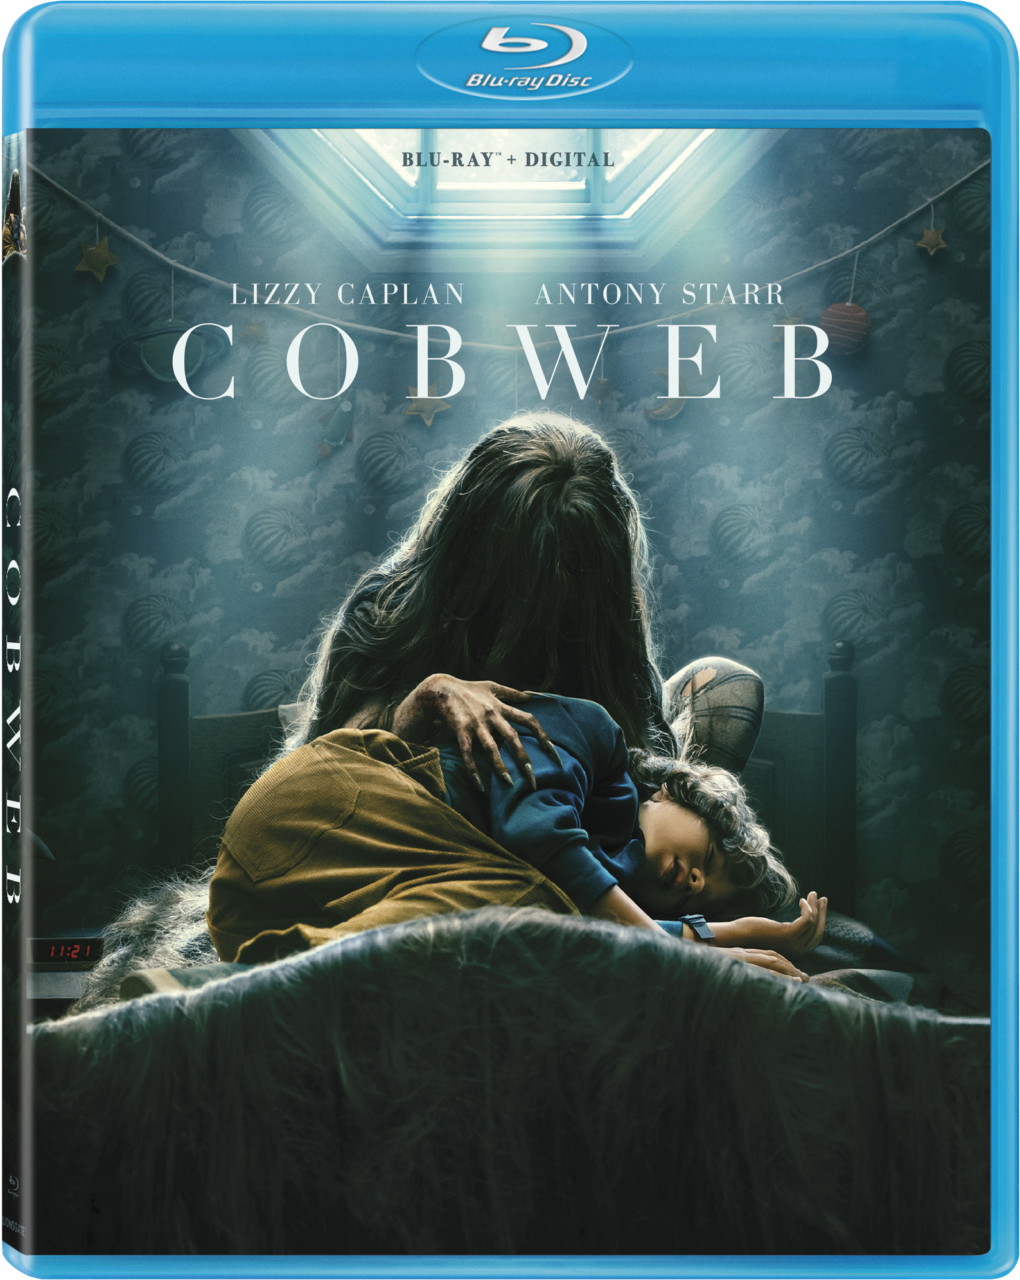 Cobweb Blu-Ray cover (Lionsgate)